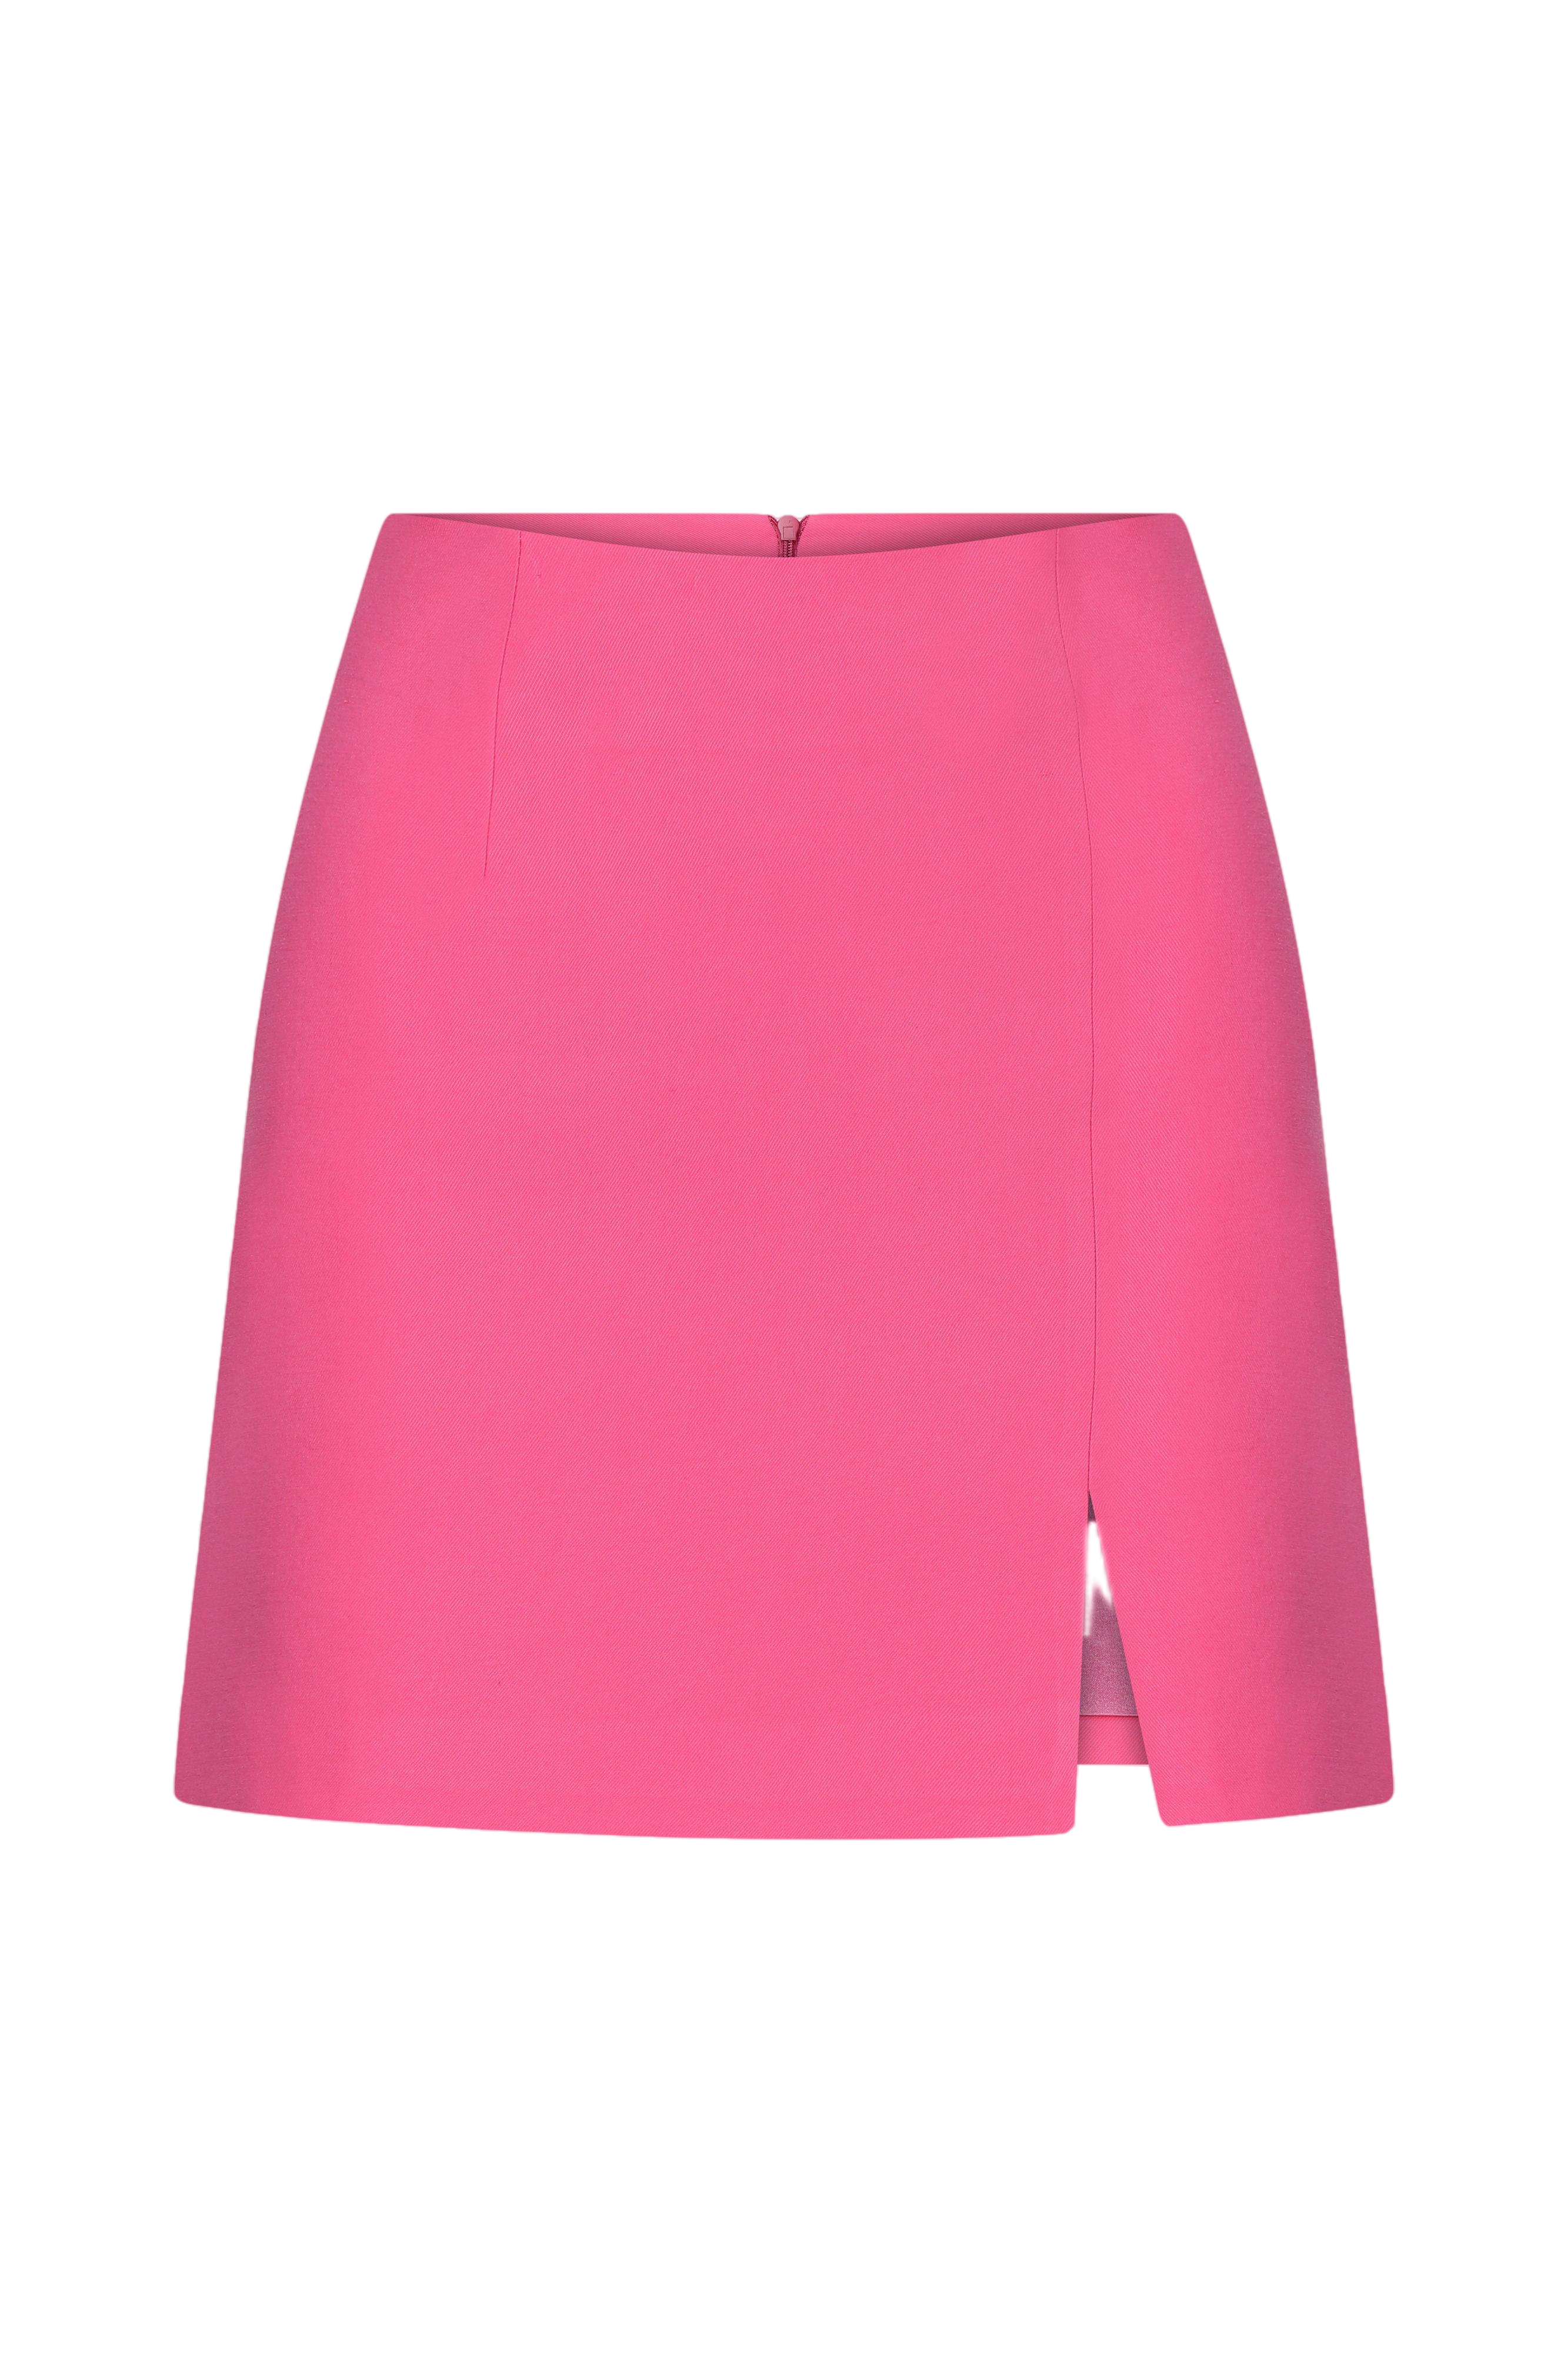 Chanel PARIS Bubblegum Pink Silk Skirt / Preppy / Posh / 